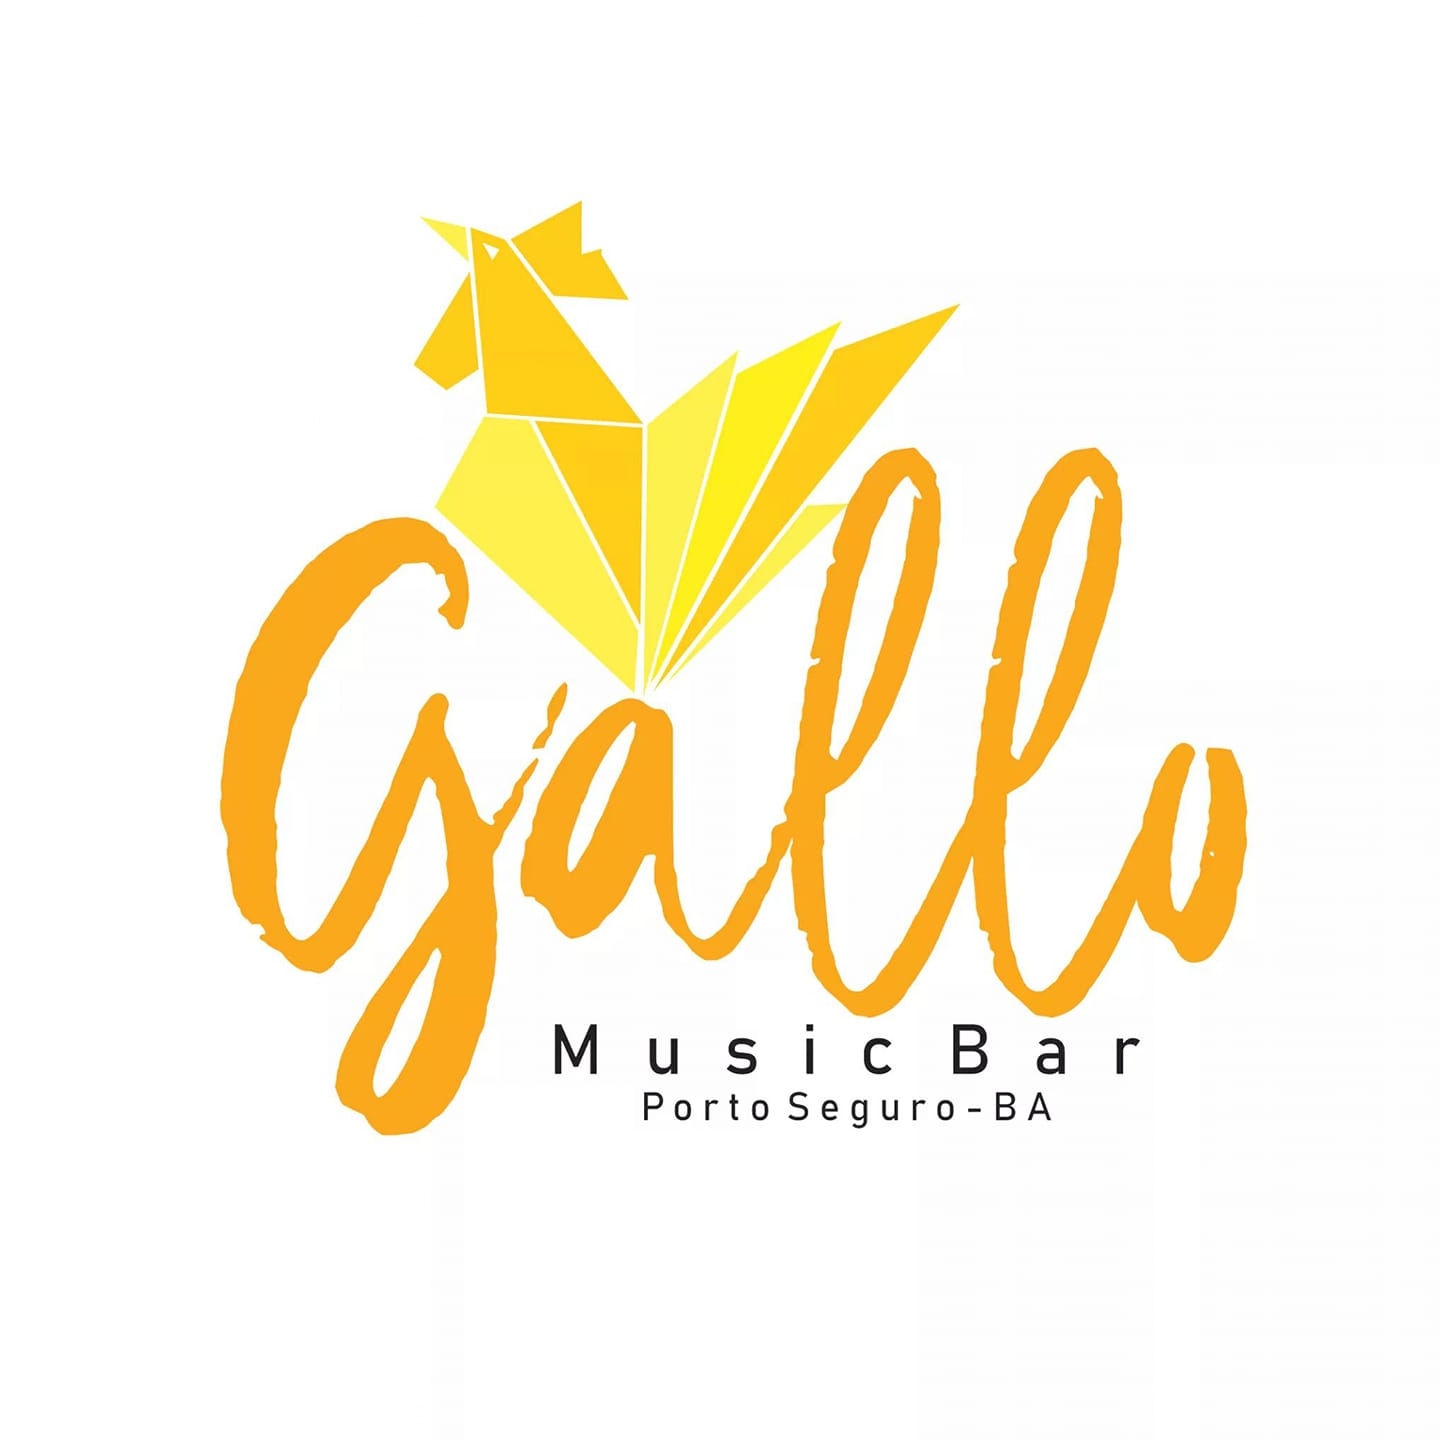 Cartaz  - Gallo Music Bar - Rua 2 de julho, 20B - Casa da Lenha, Quinta-feira 12 de Setembro de 2019